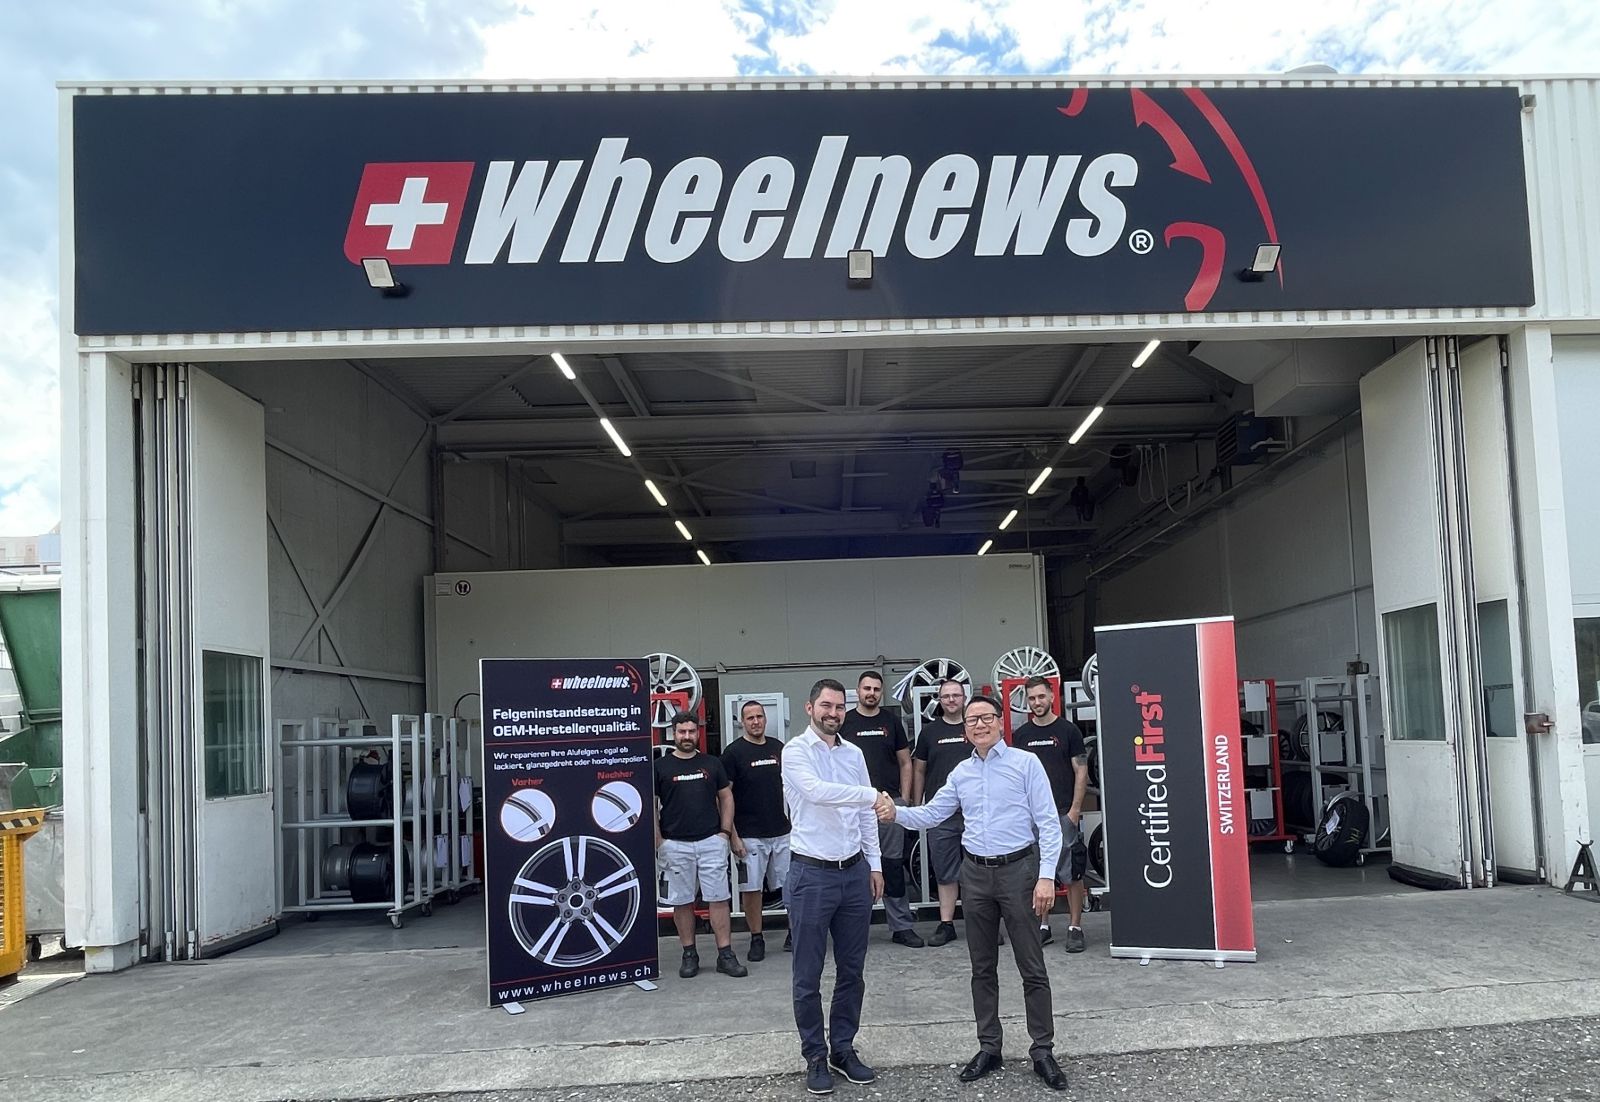 Edmond Borner, Geschäftsleiter Wheelnews (links) mit seinem Team (hinten) und Richard Schöller, Leiter CertifiedFirst Switzerland, vor der Wheelnews-Zentrale in Buchs AG